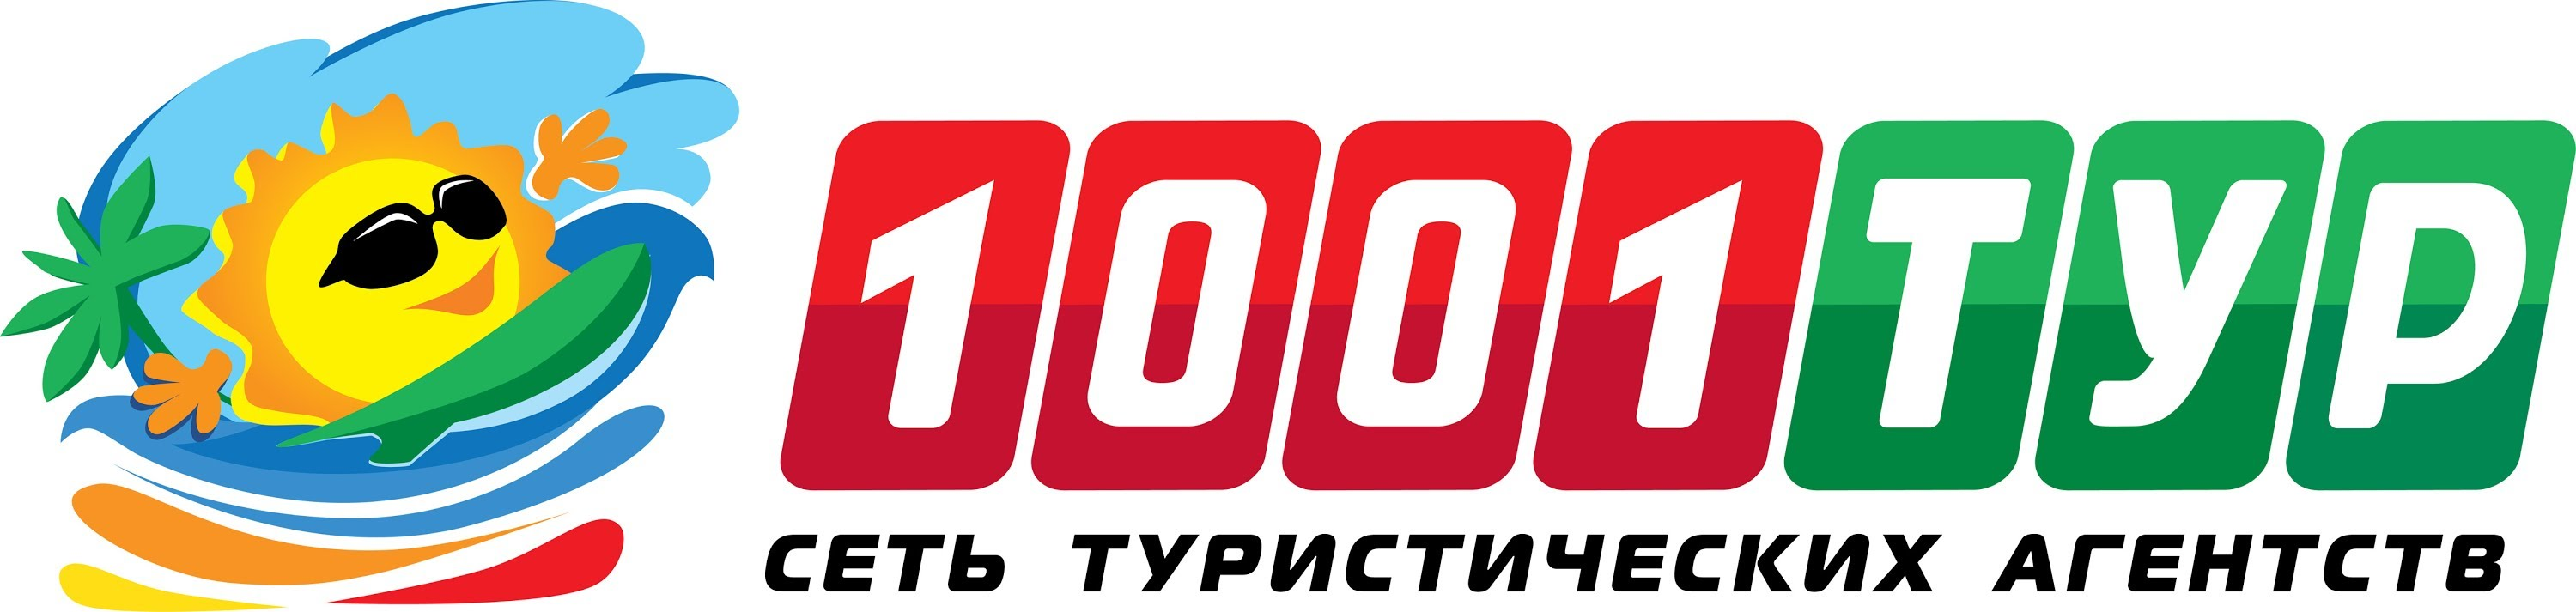 1001 тур Кострома: отзывы от сотрудников и партнеров